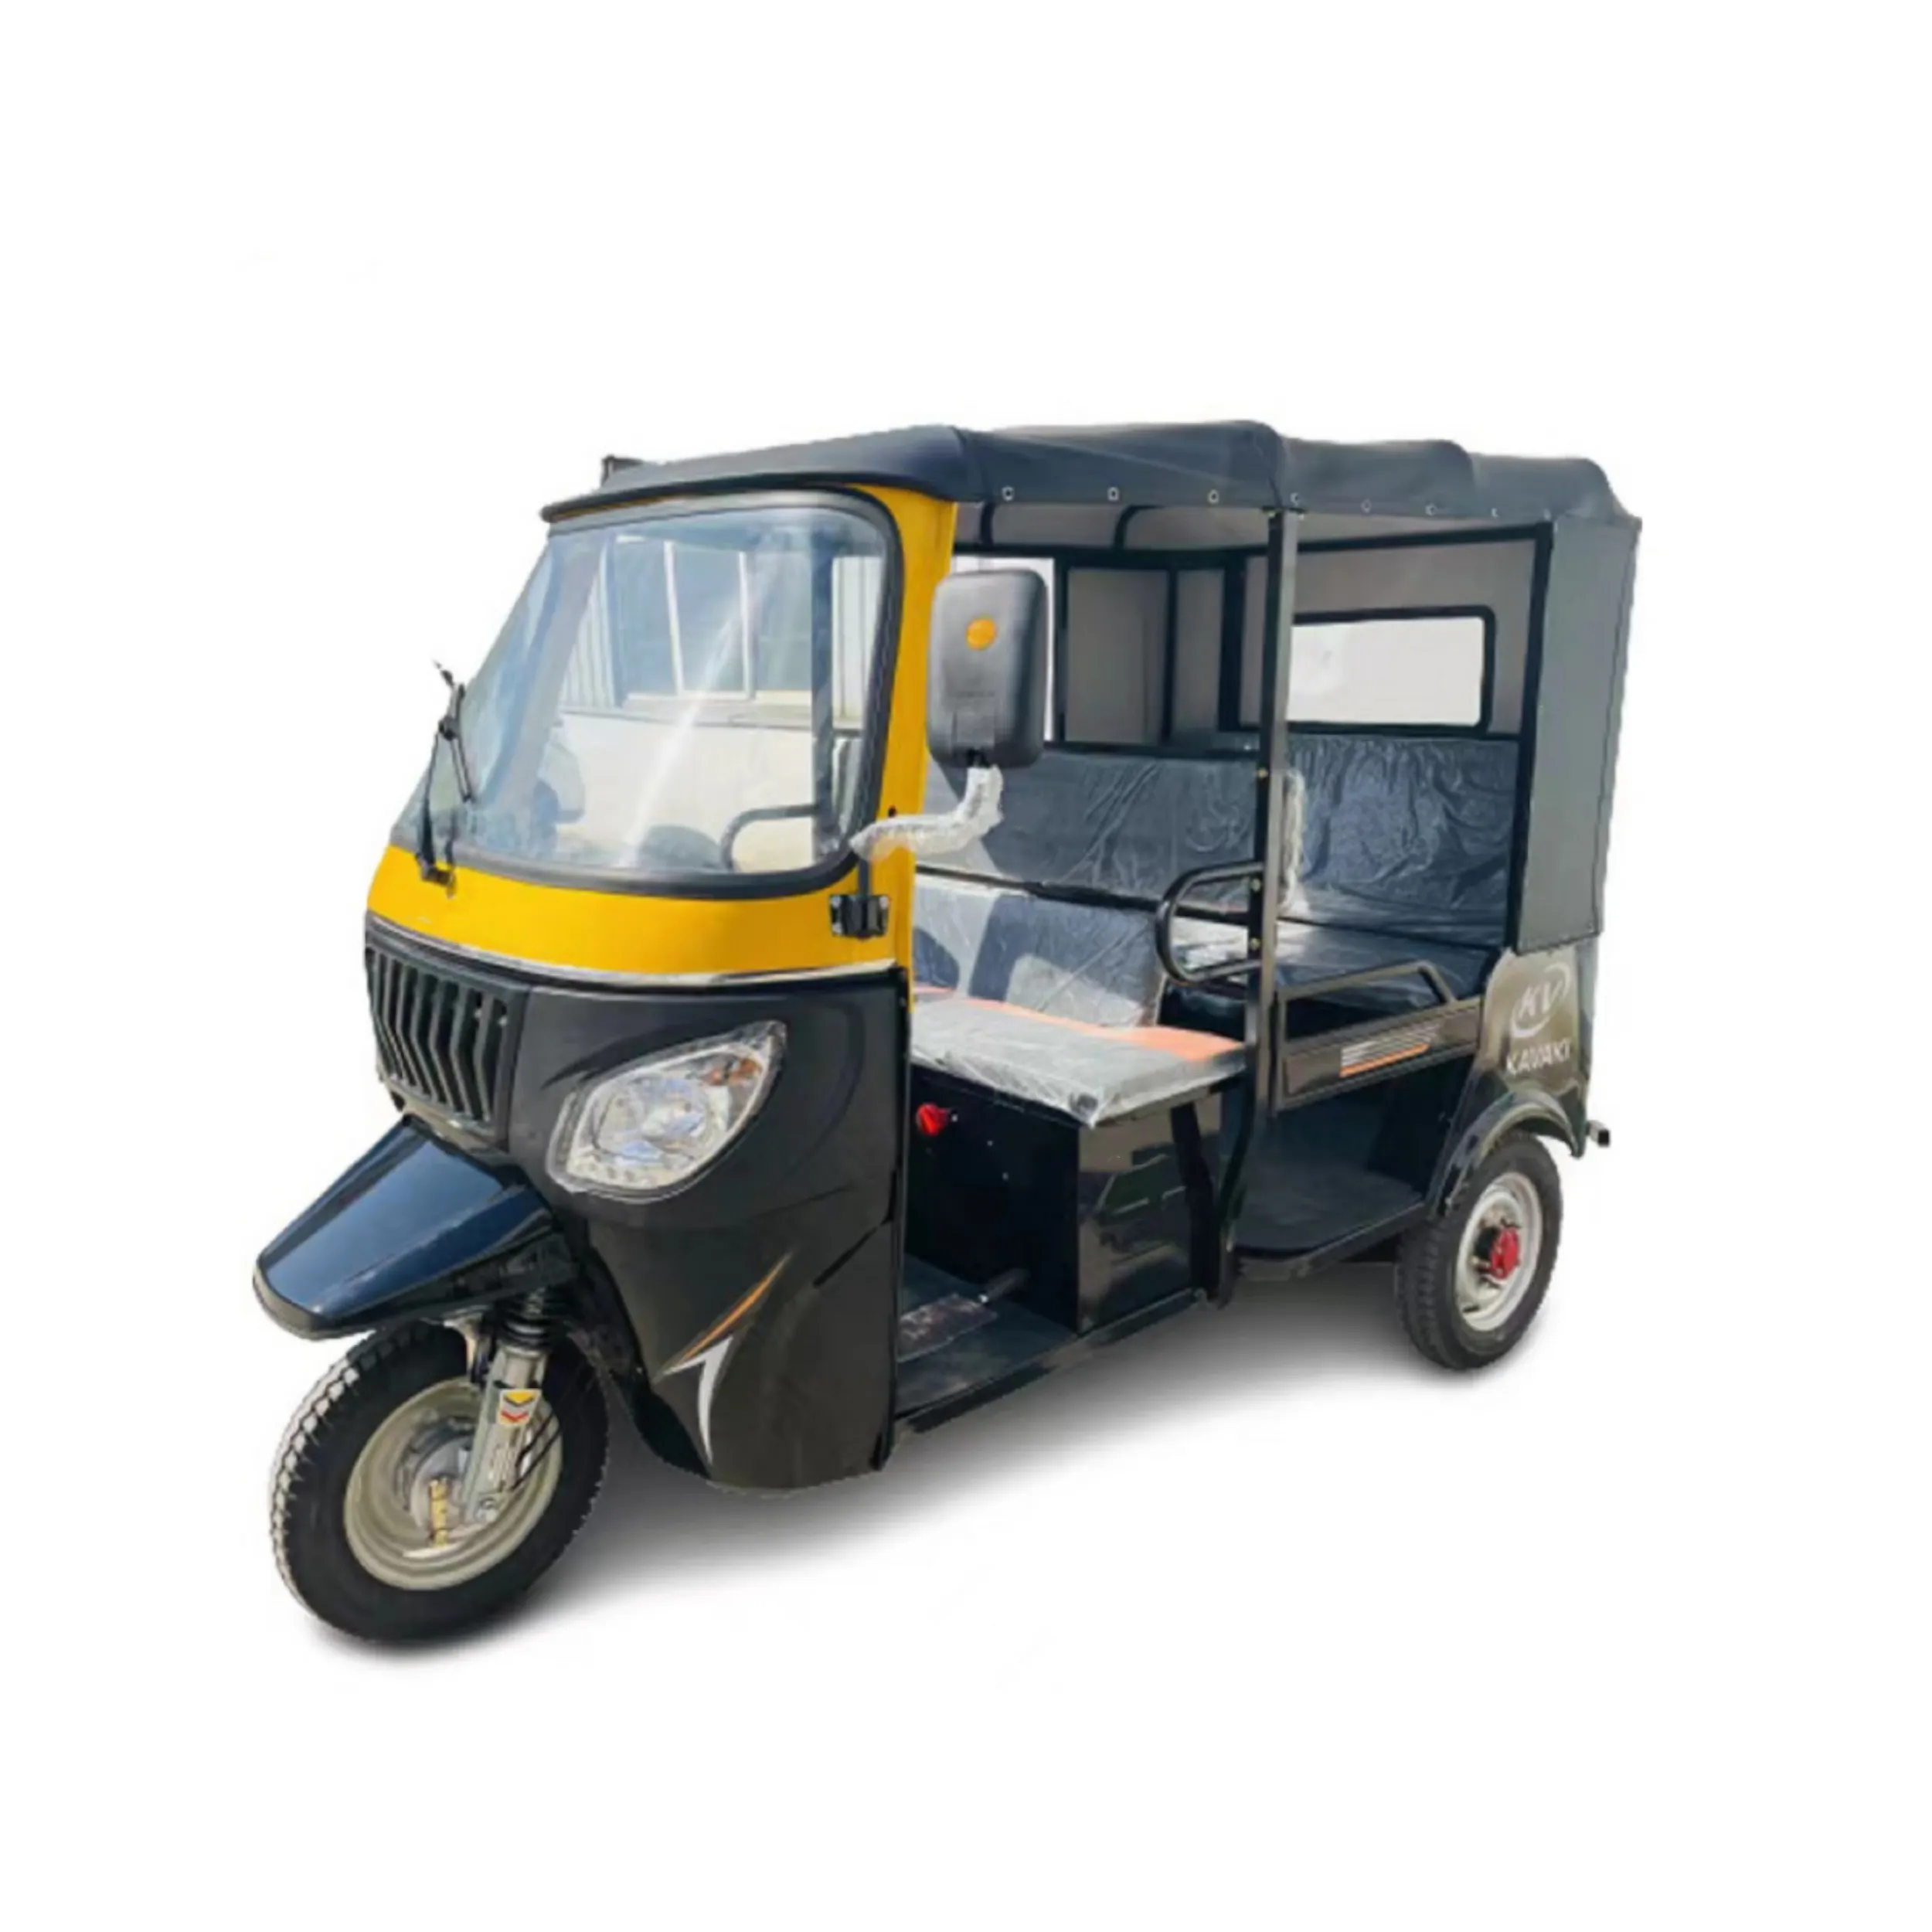 Doğu afrika'ya ihraç güney afrika çevre dostu tuk-tuk yüksek güç tuktuk bajaj yetişkin yolcu bölmeli elektrikli üç tekerlekli bisiklet